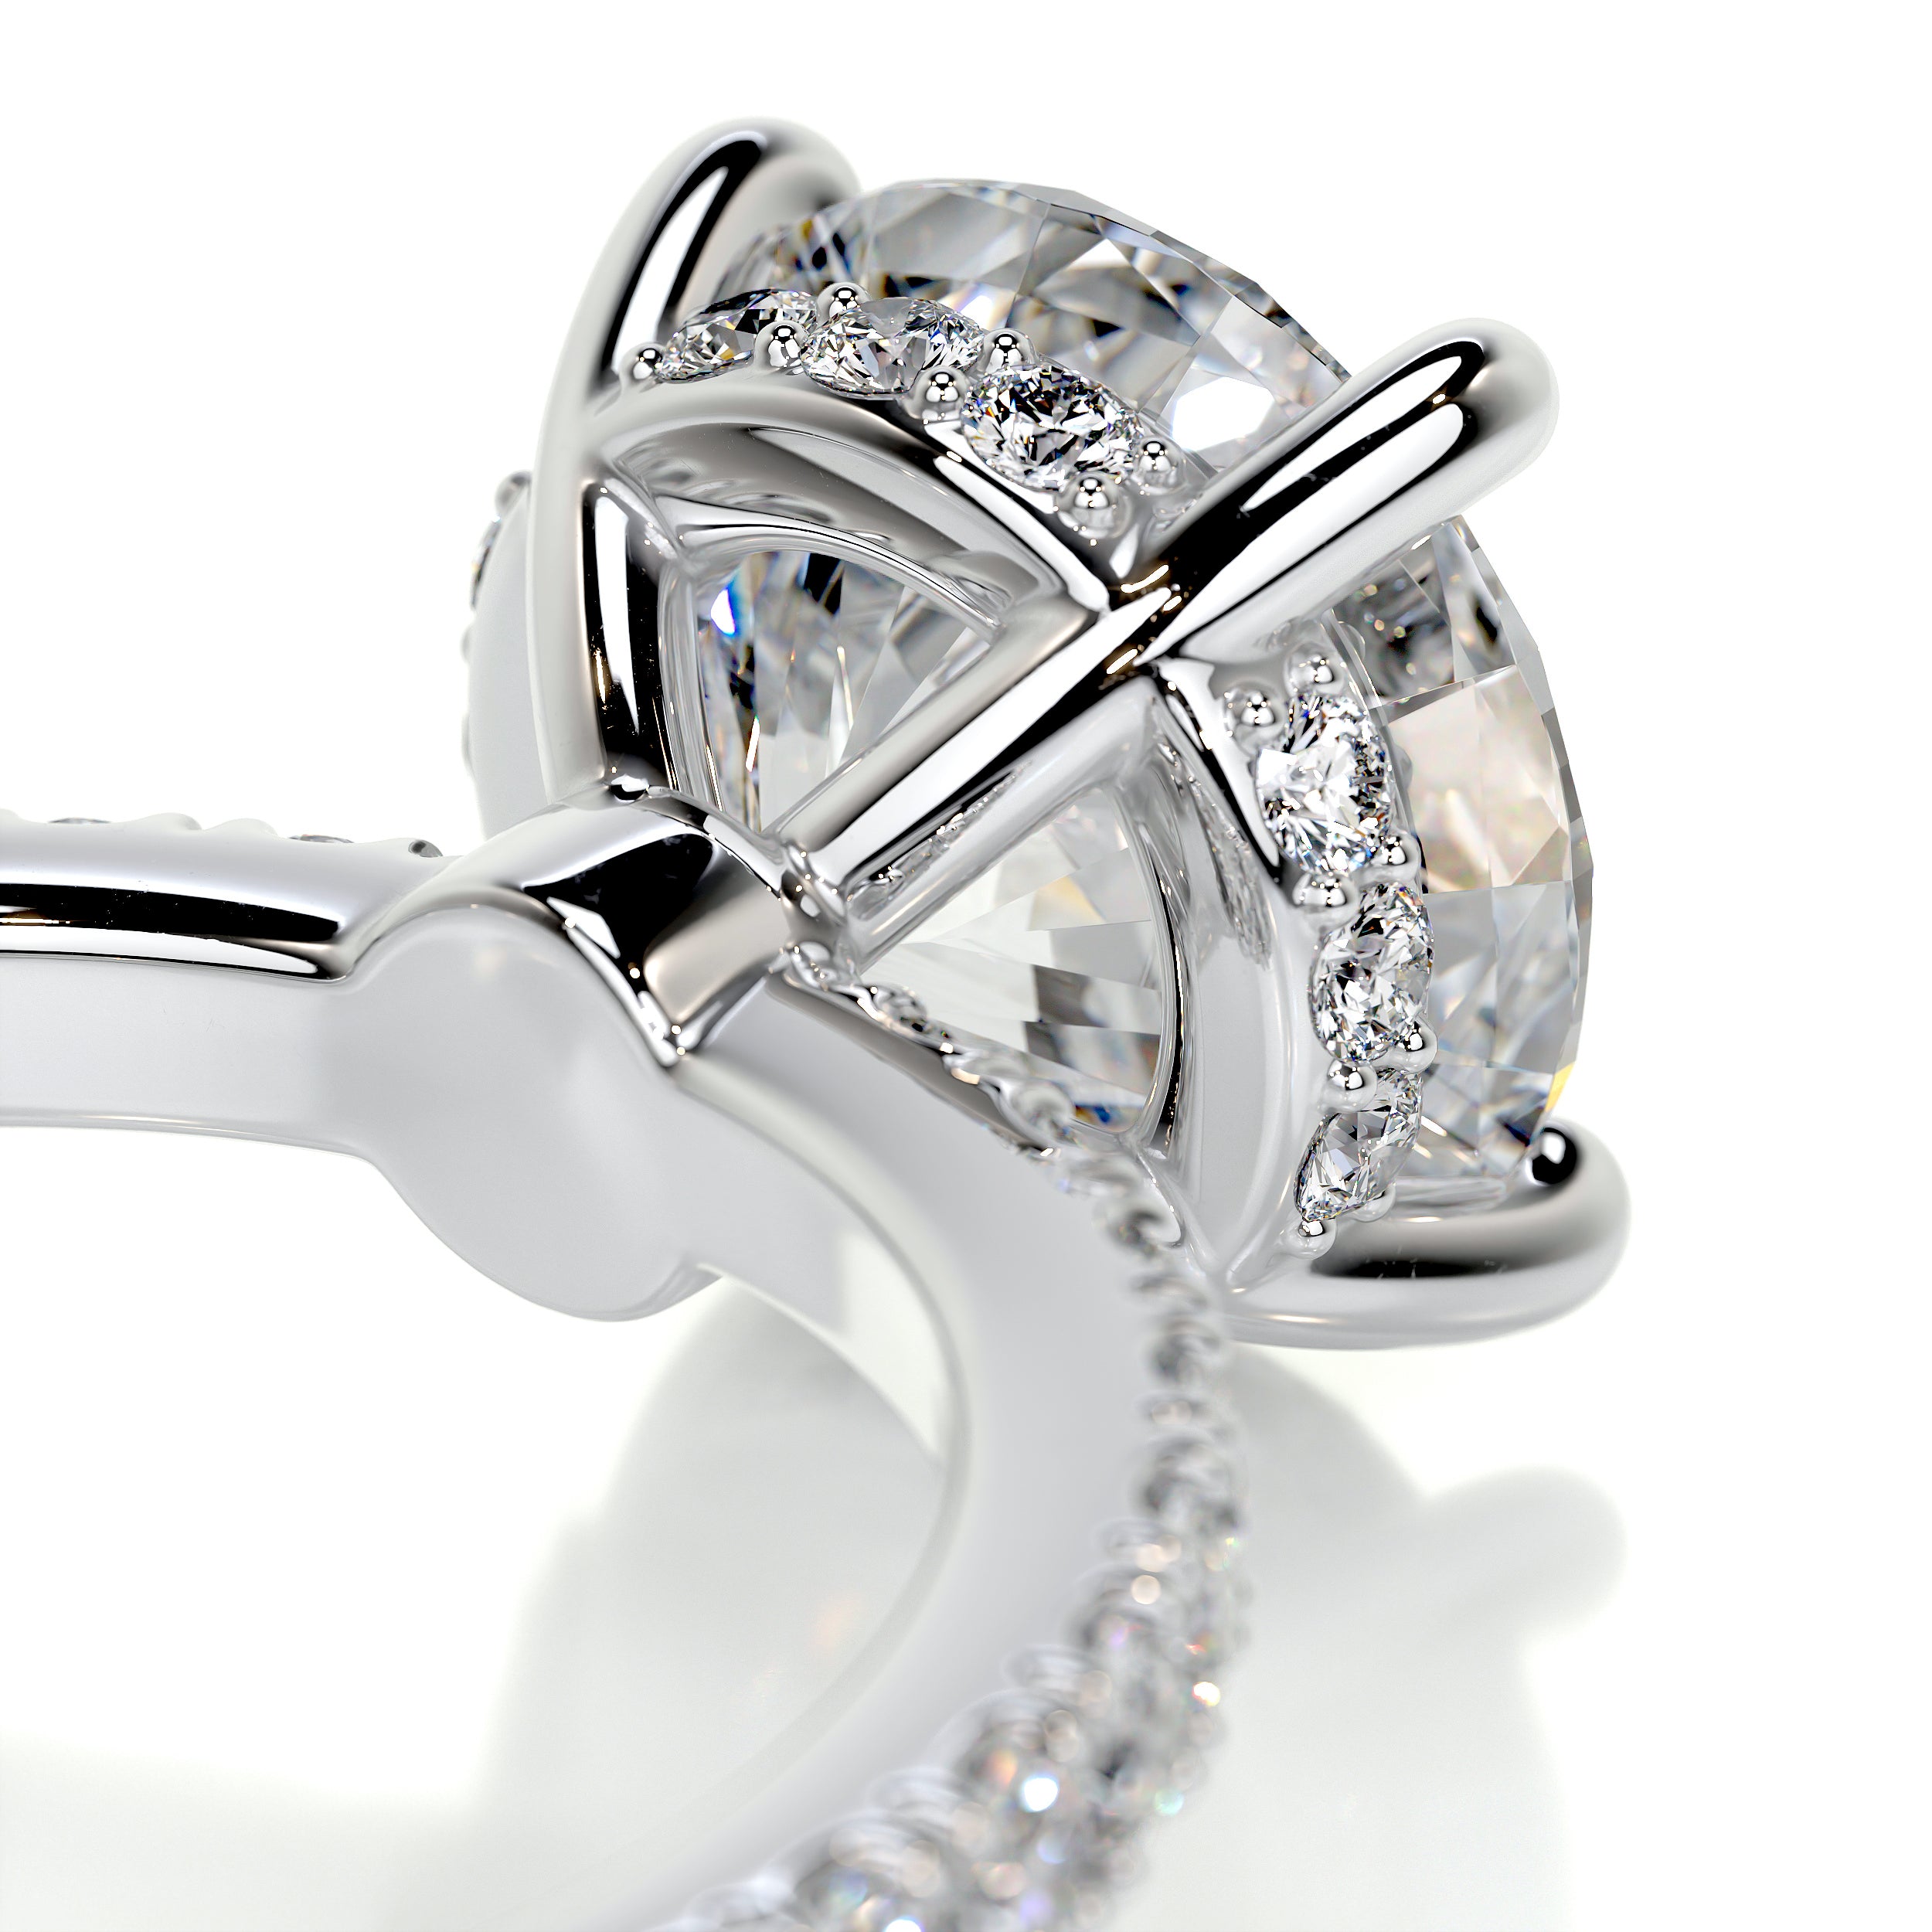 Nellie Diamond Engagement Ring -18K White Gold